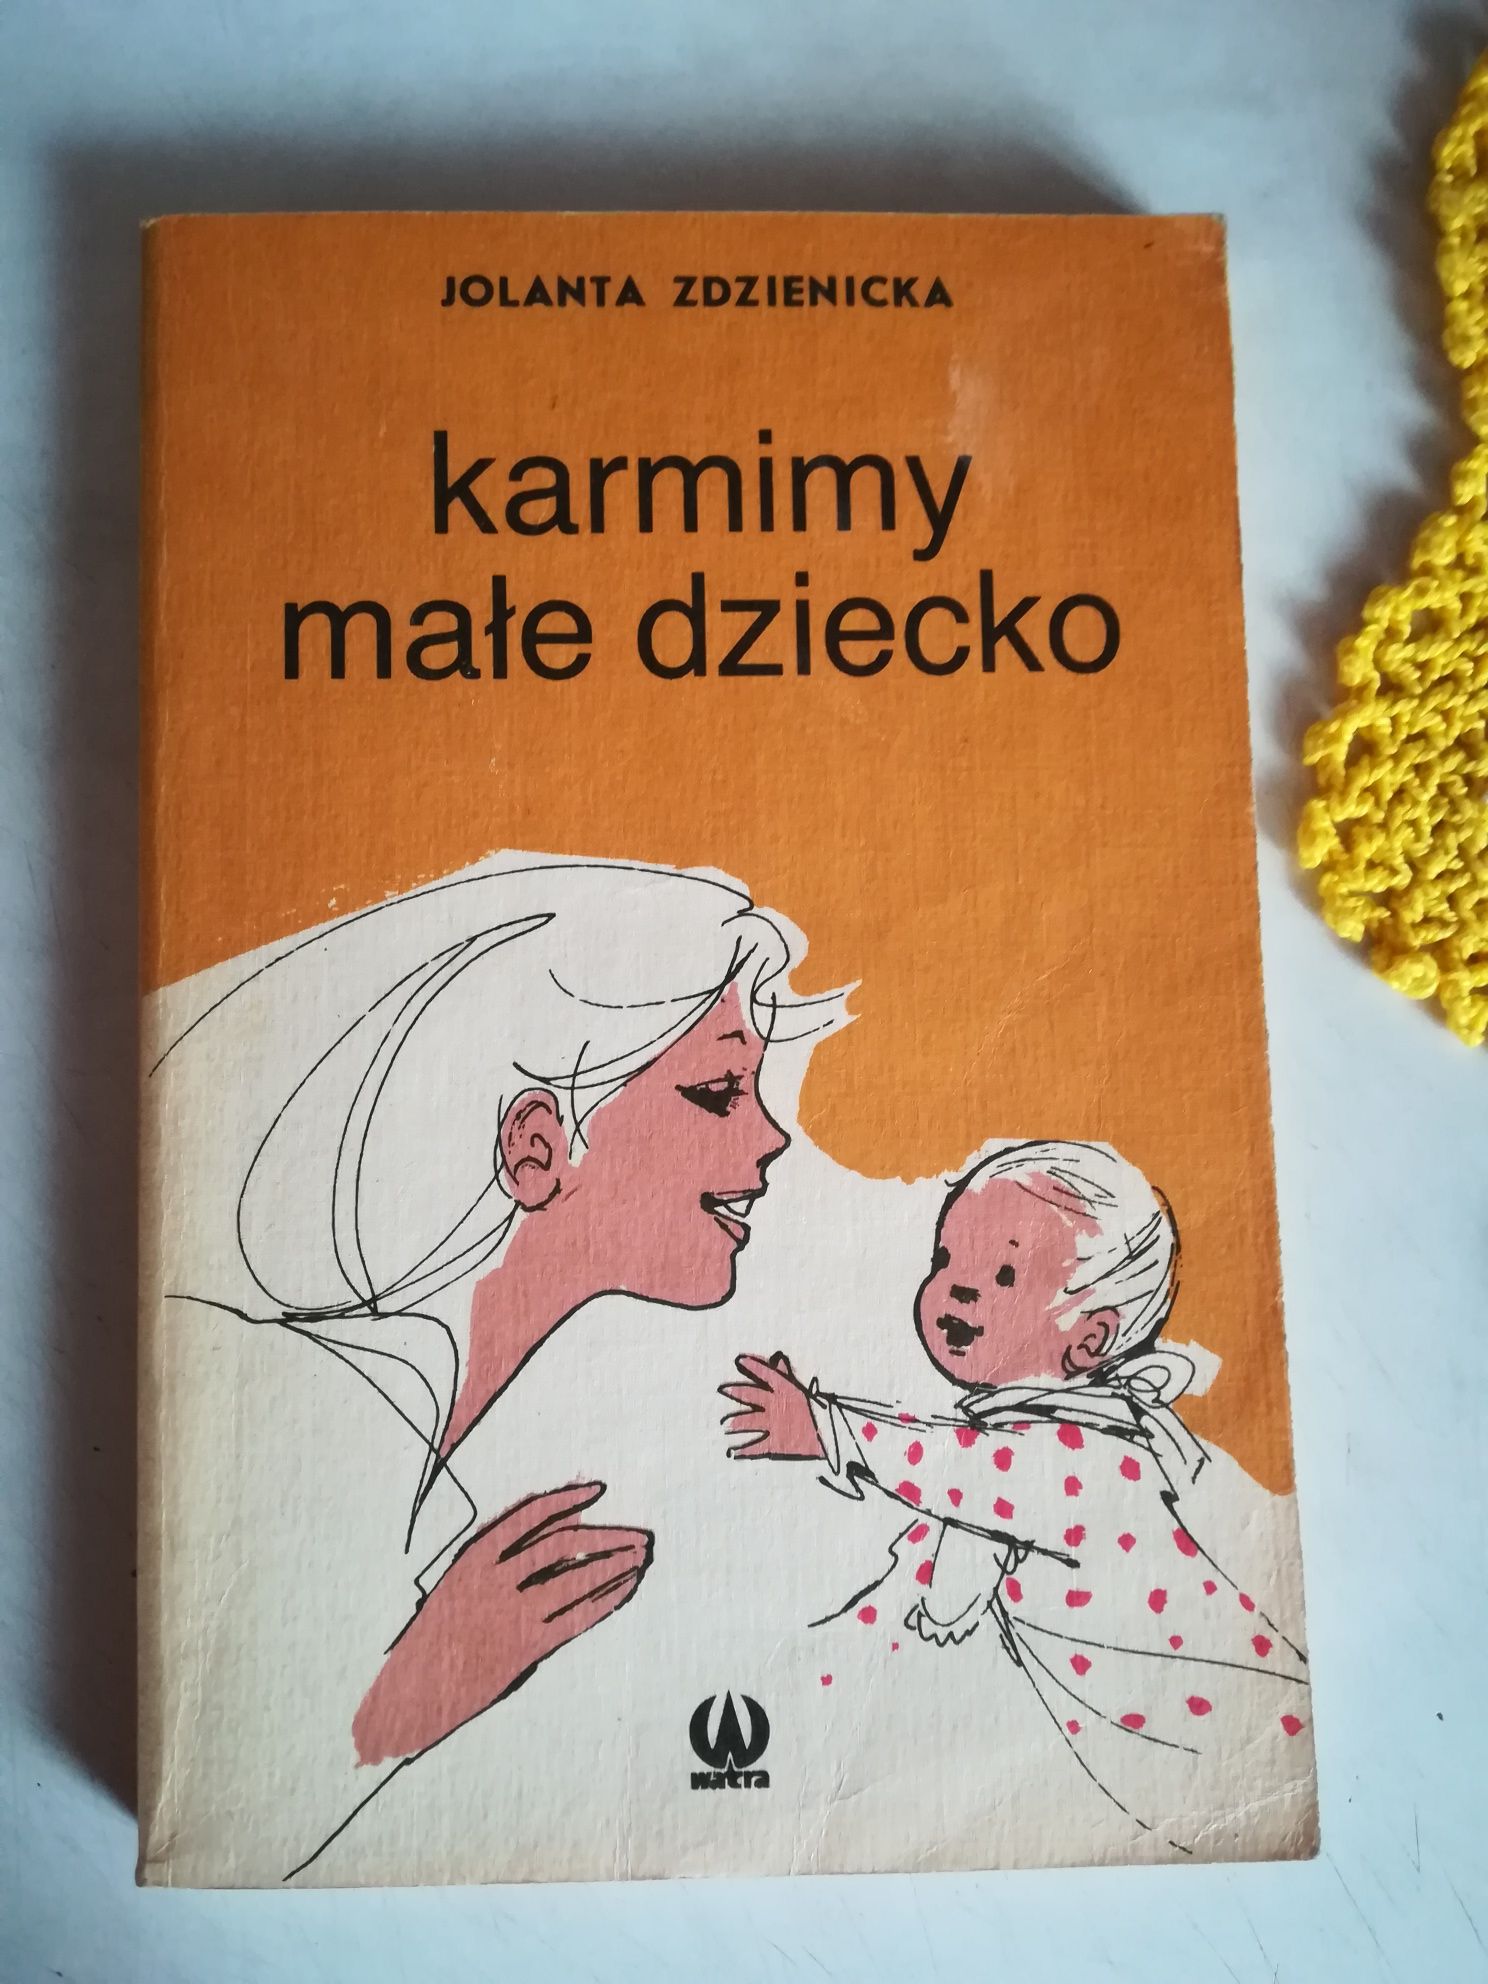 Książka - Karmimy male dziecko - Jolanta Zdzienicka - 1989 rok